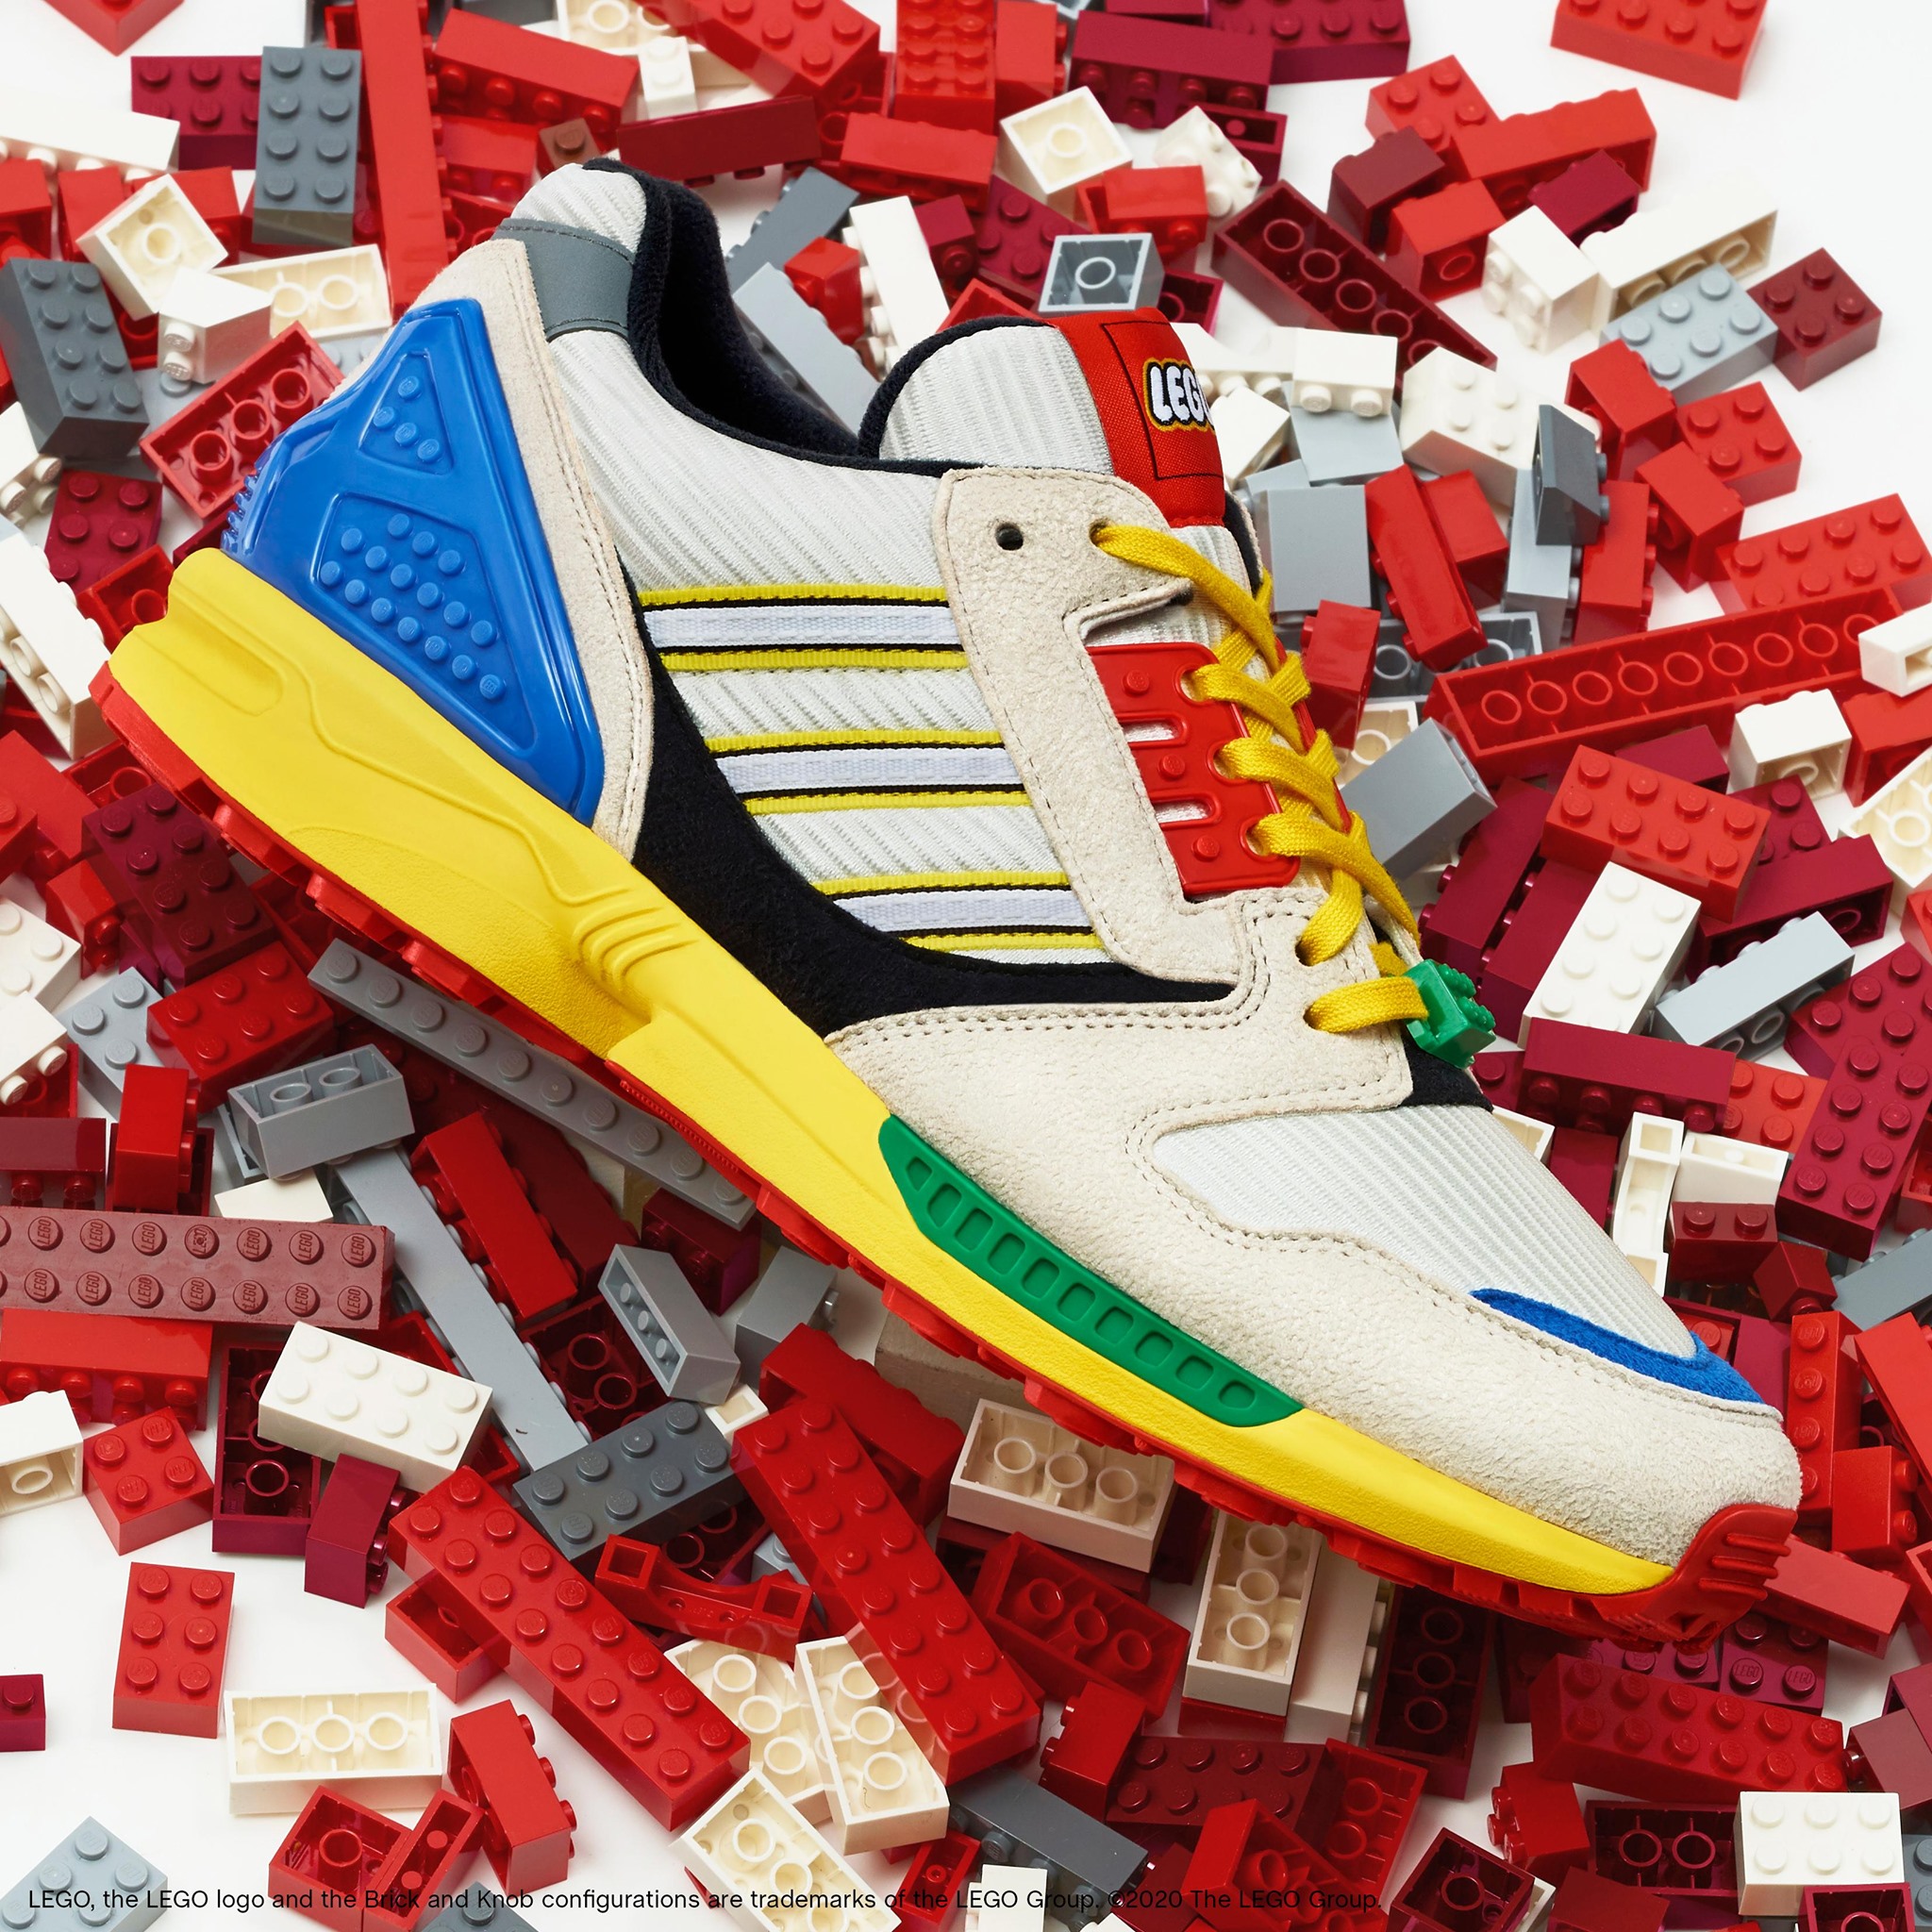 Colibrí Algebraico Fuerza LEGO se junta con Adidas para lanzar estos tenis: Marketing de nostalgia